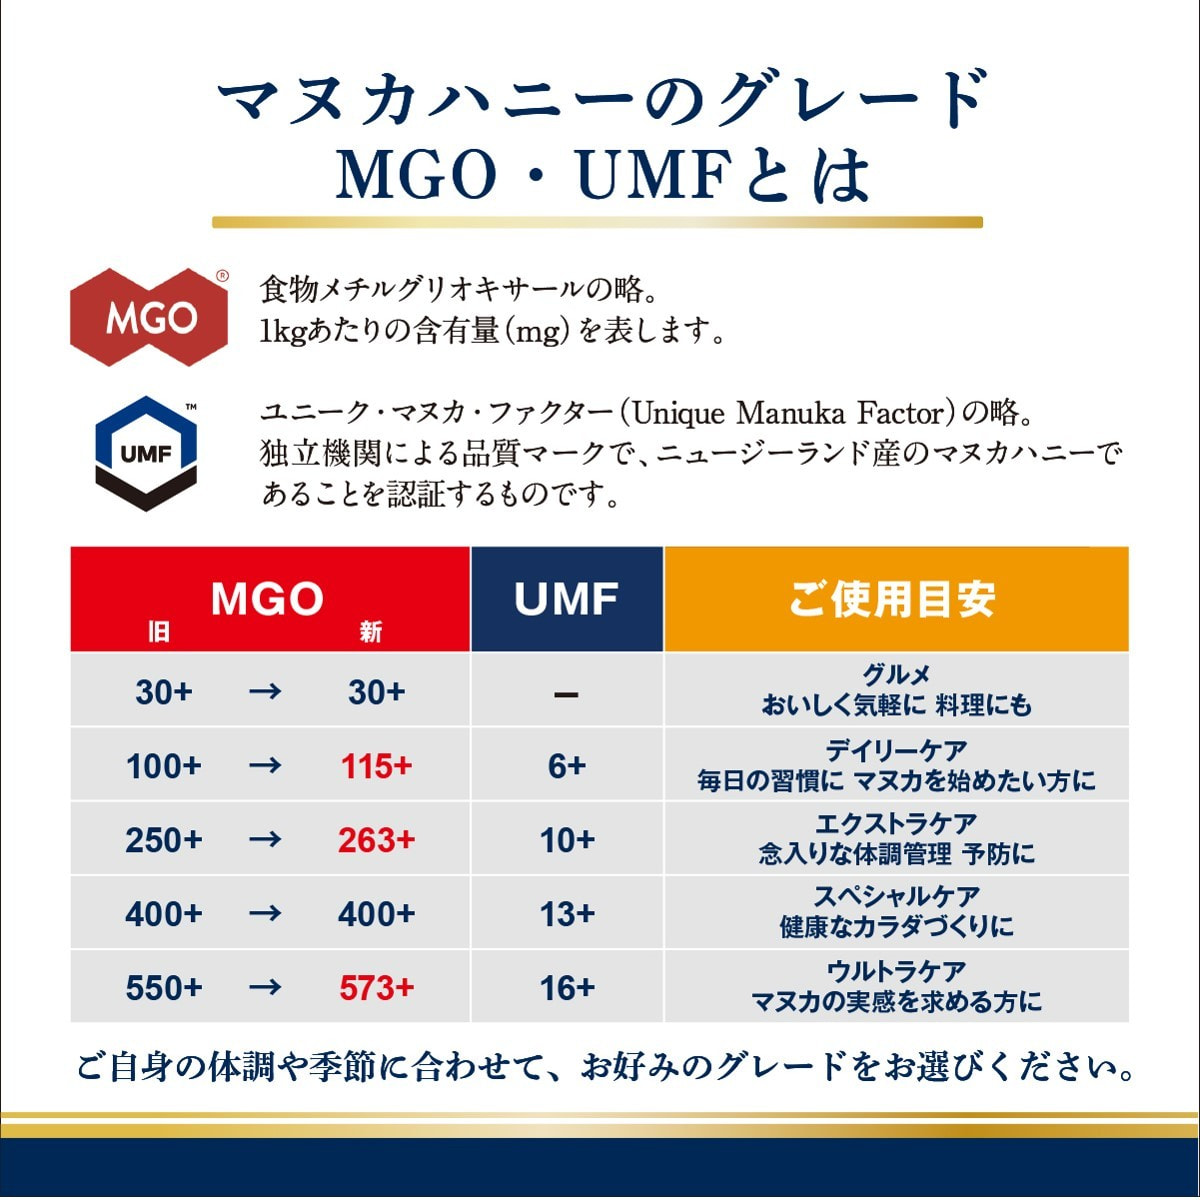 Manuka Health（マヌカヘルス）マヌカハニー MGO400/UMF13 500gの卸